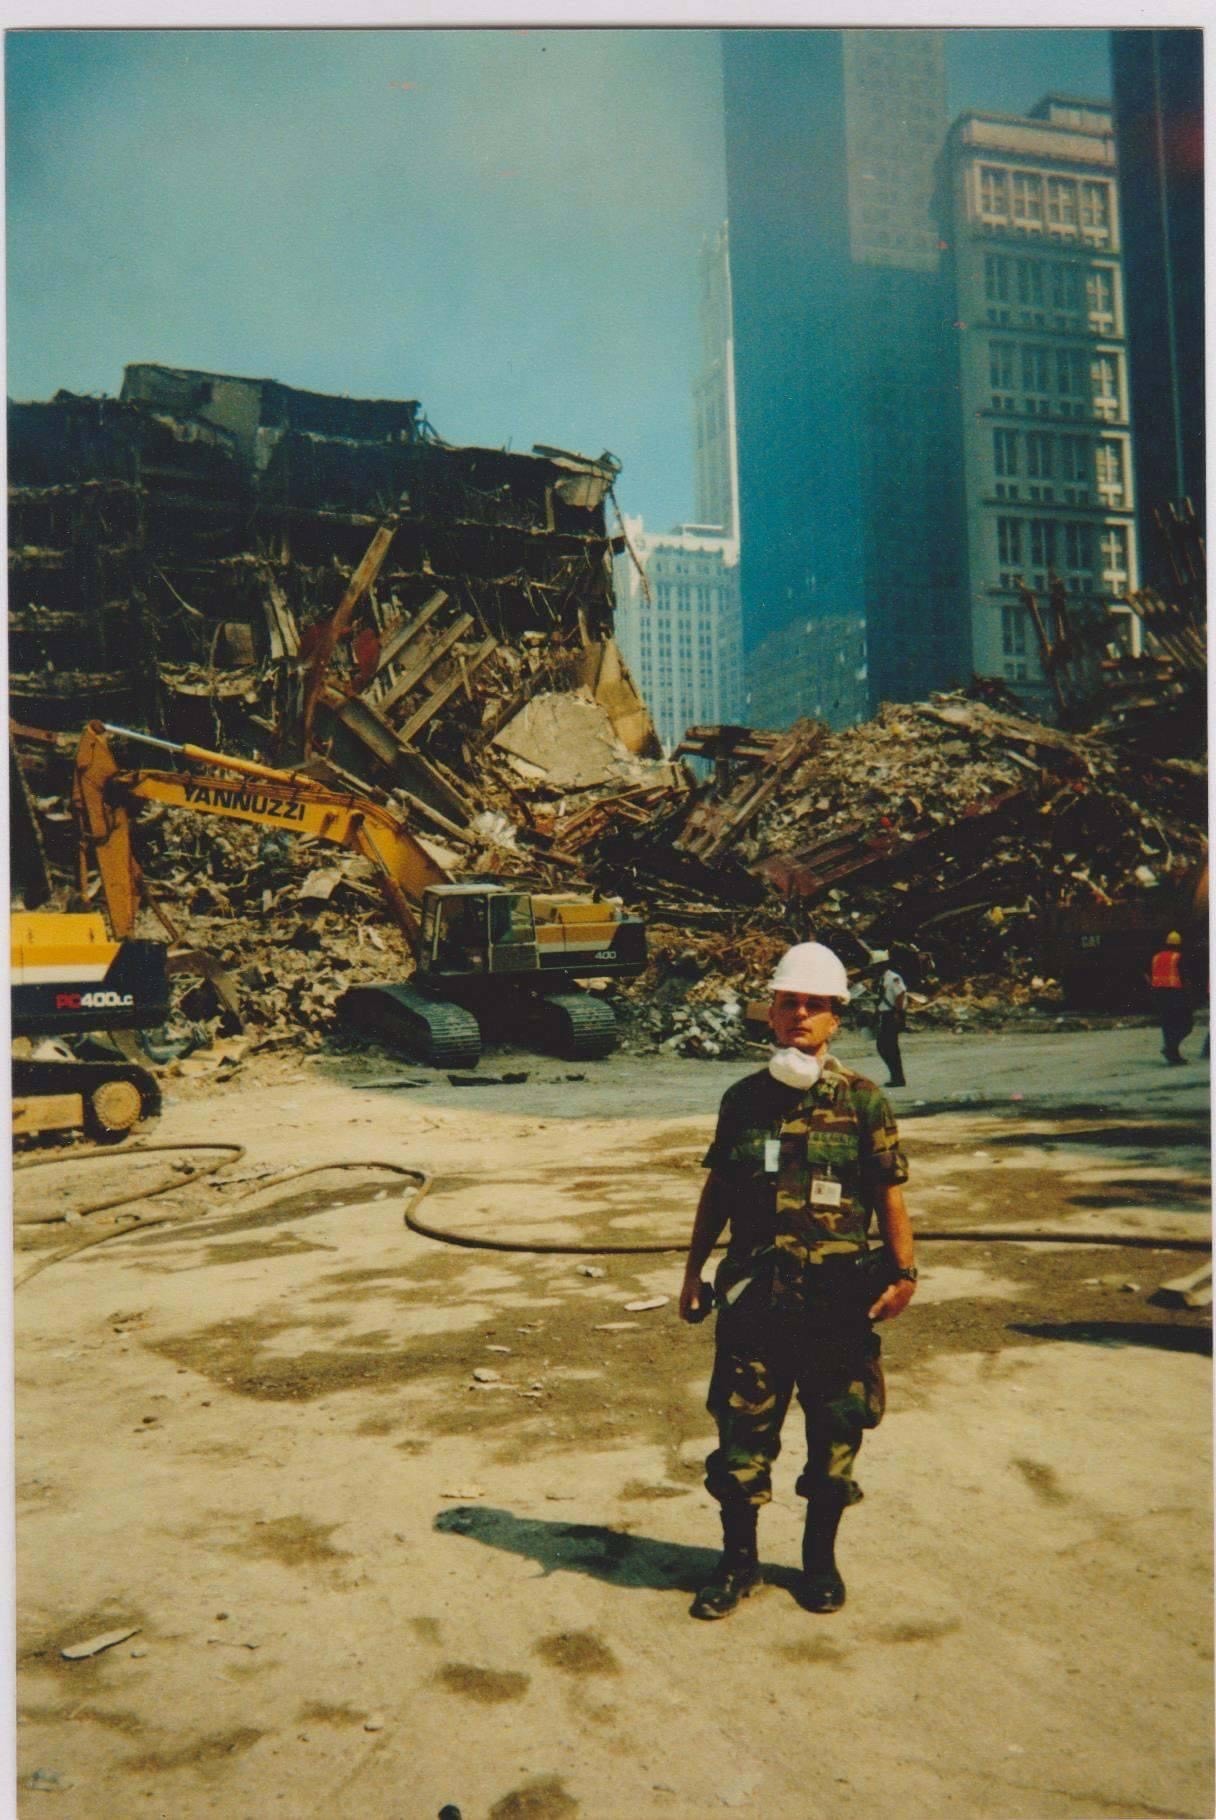 9/11 plane debris removed near WTC